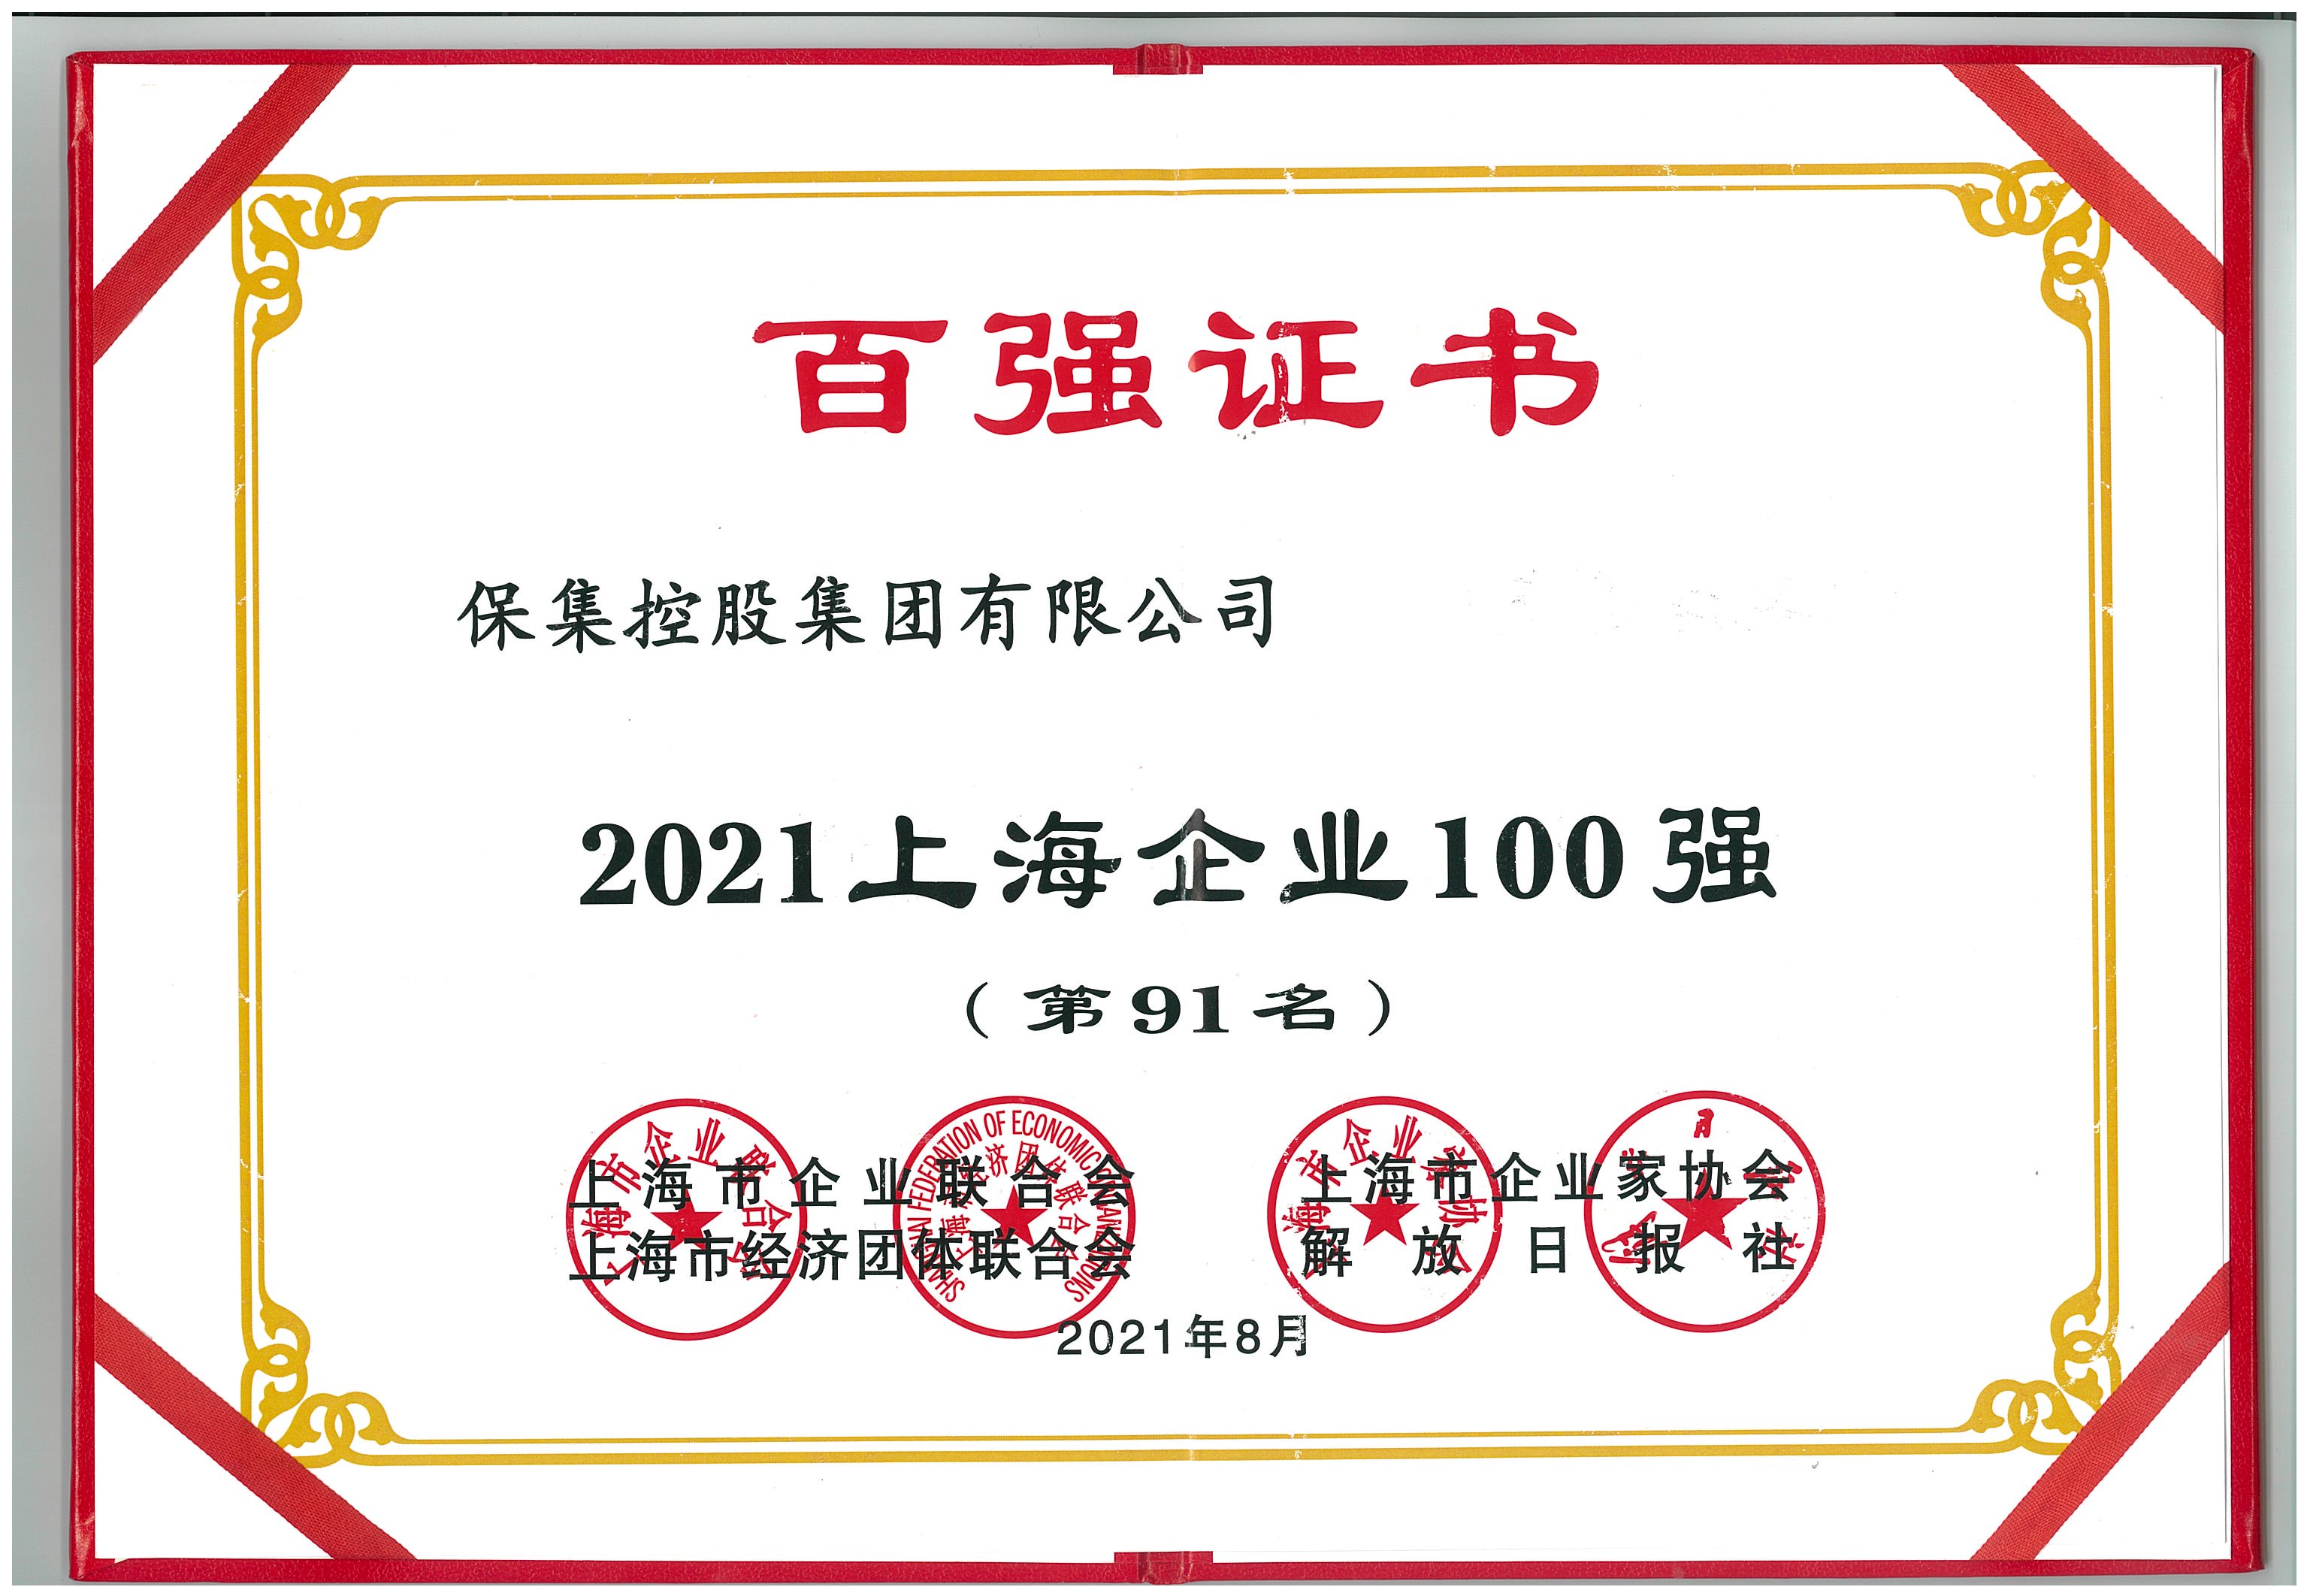 【集团新闻】| 祝贺梦之城平台荣登“2021上海企业100强”和“2021上海民营企业100强”